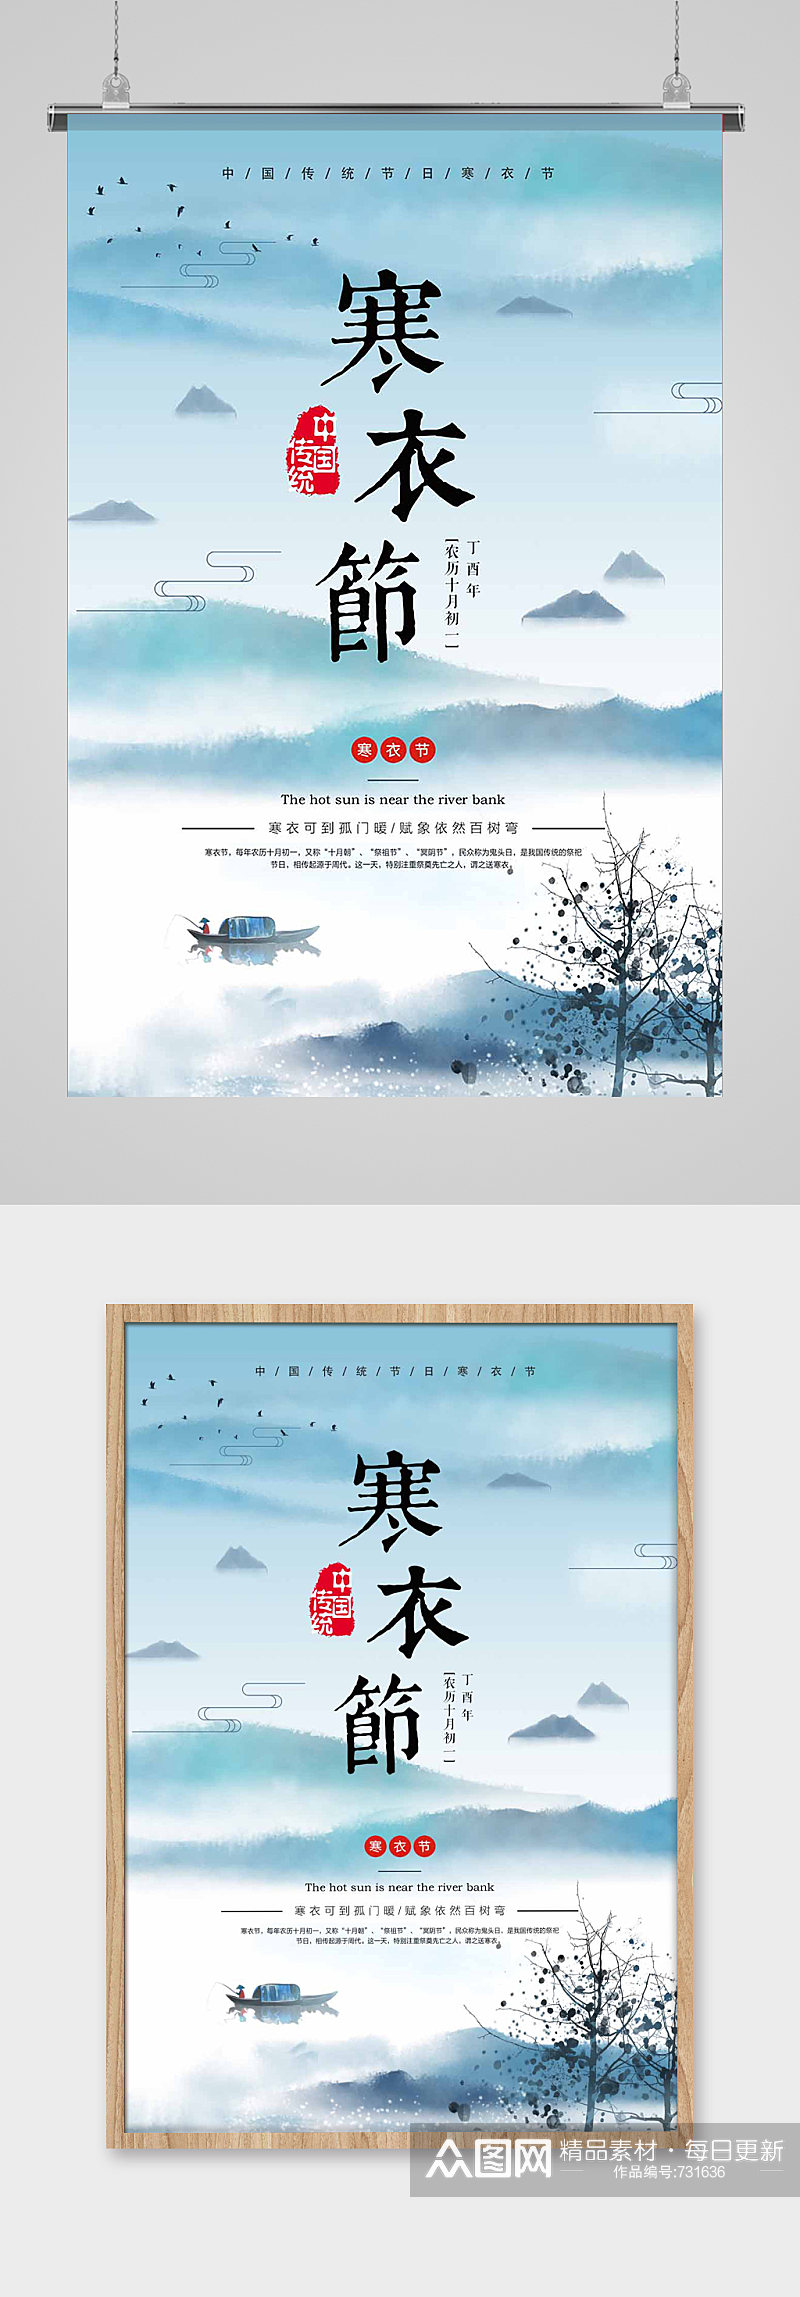 寒衣节传统节日海报素材